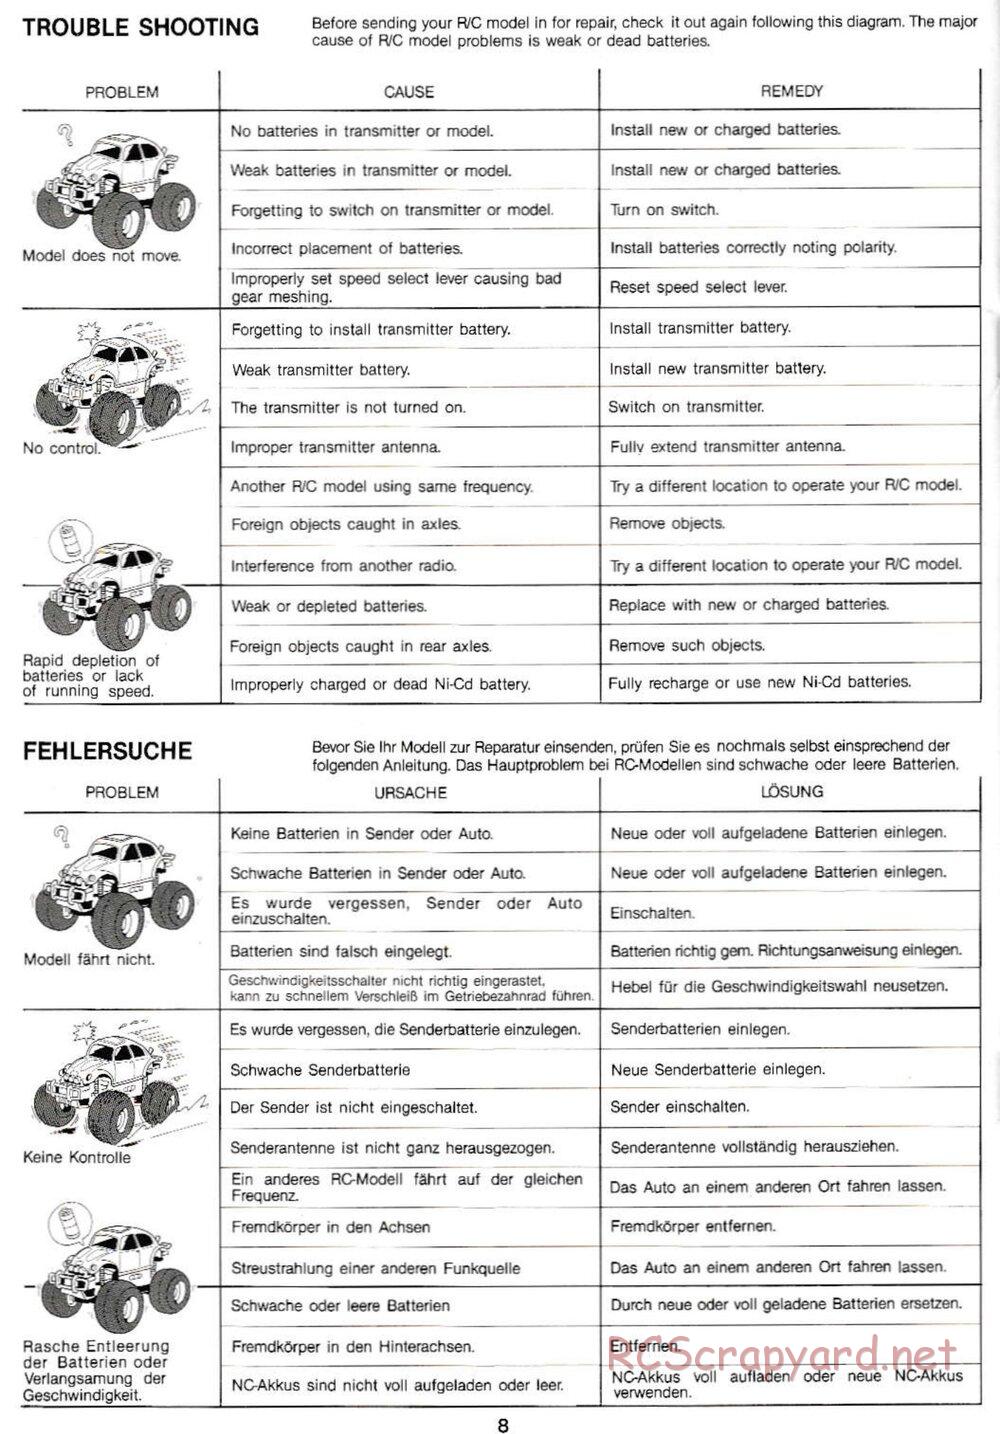 Tamiya - Monster Beetle QD Chassis - Manual - Page 8